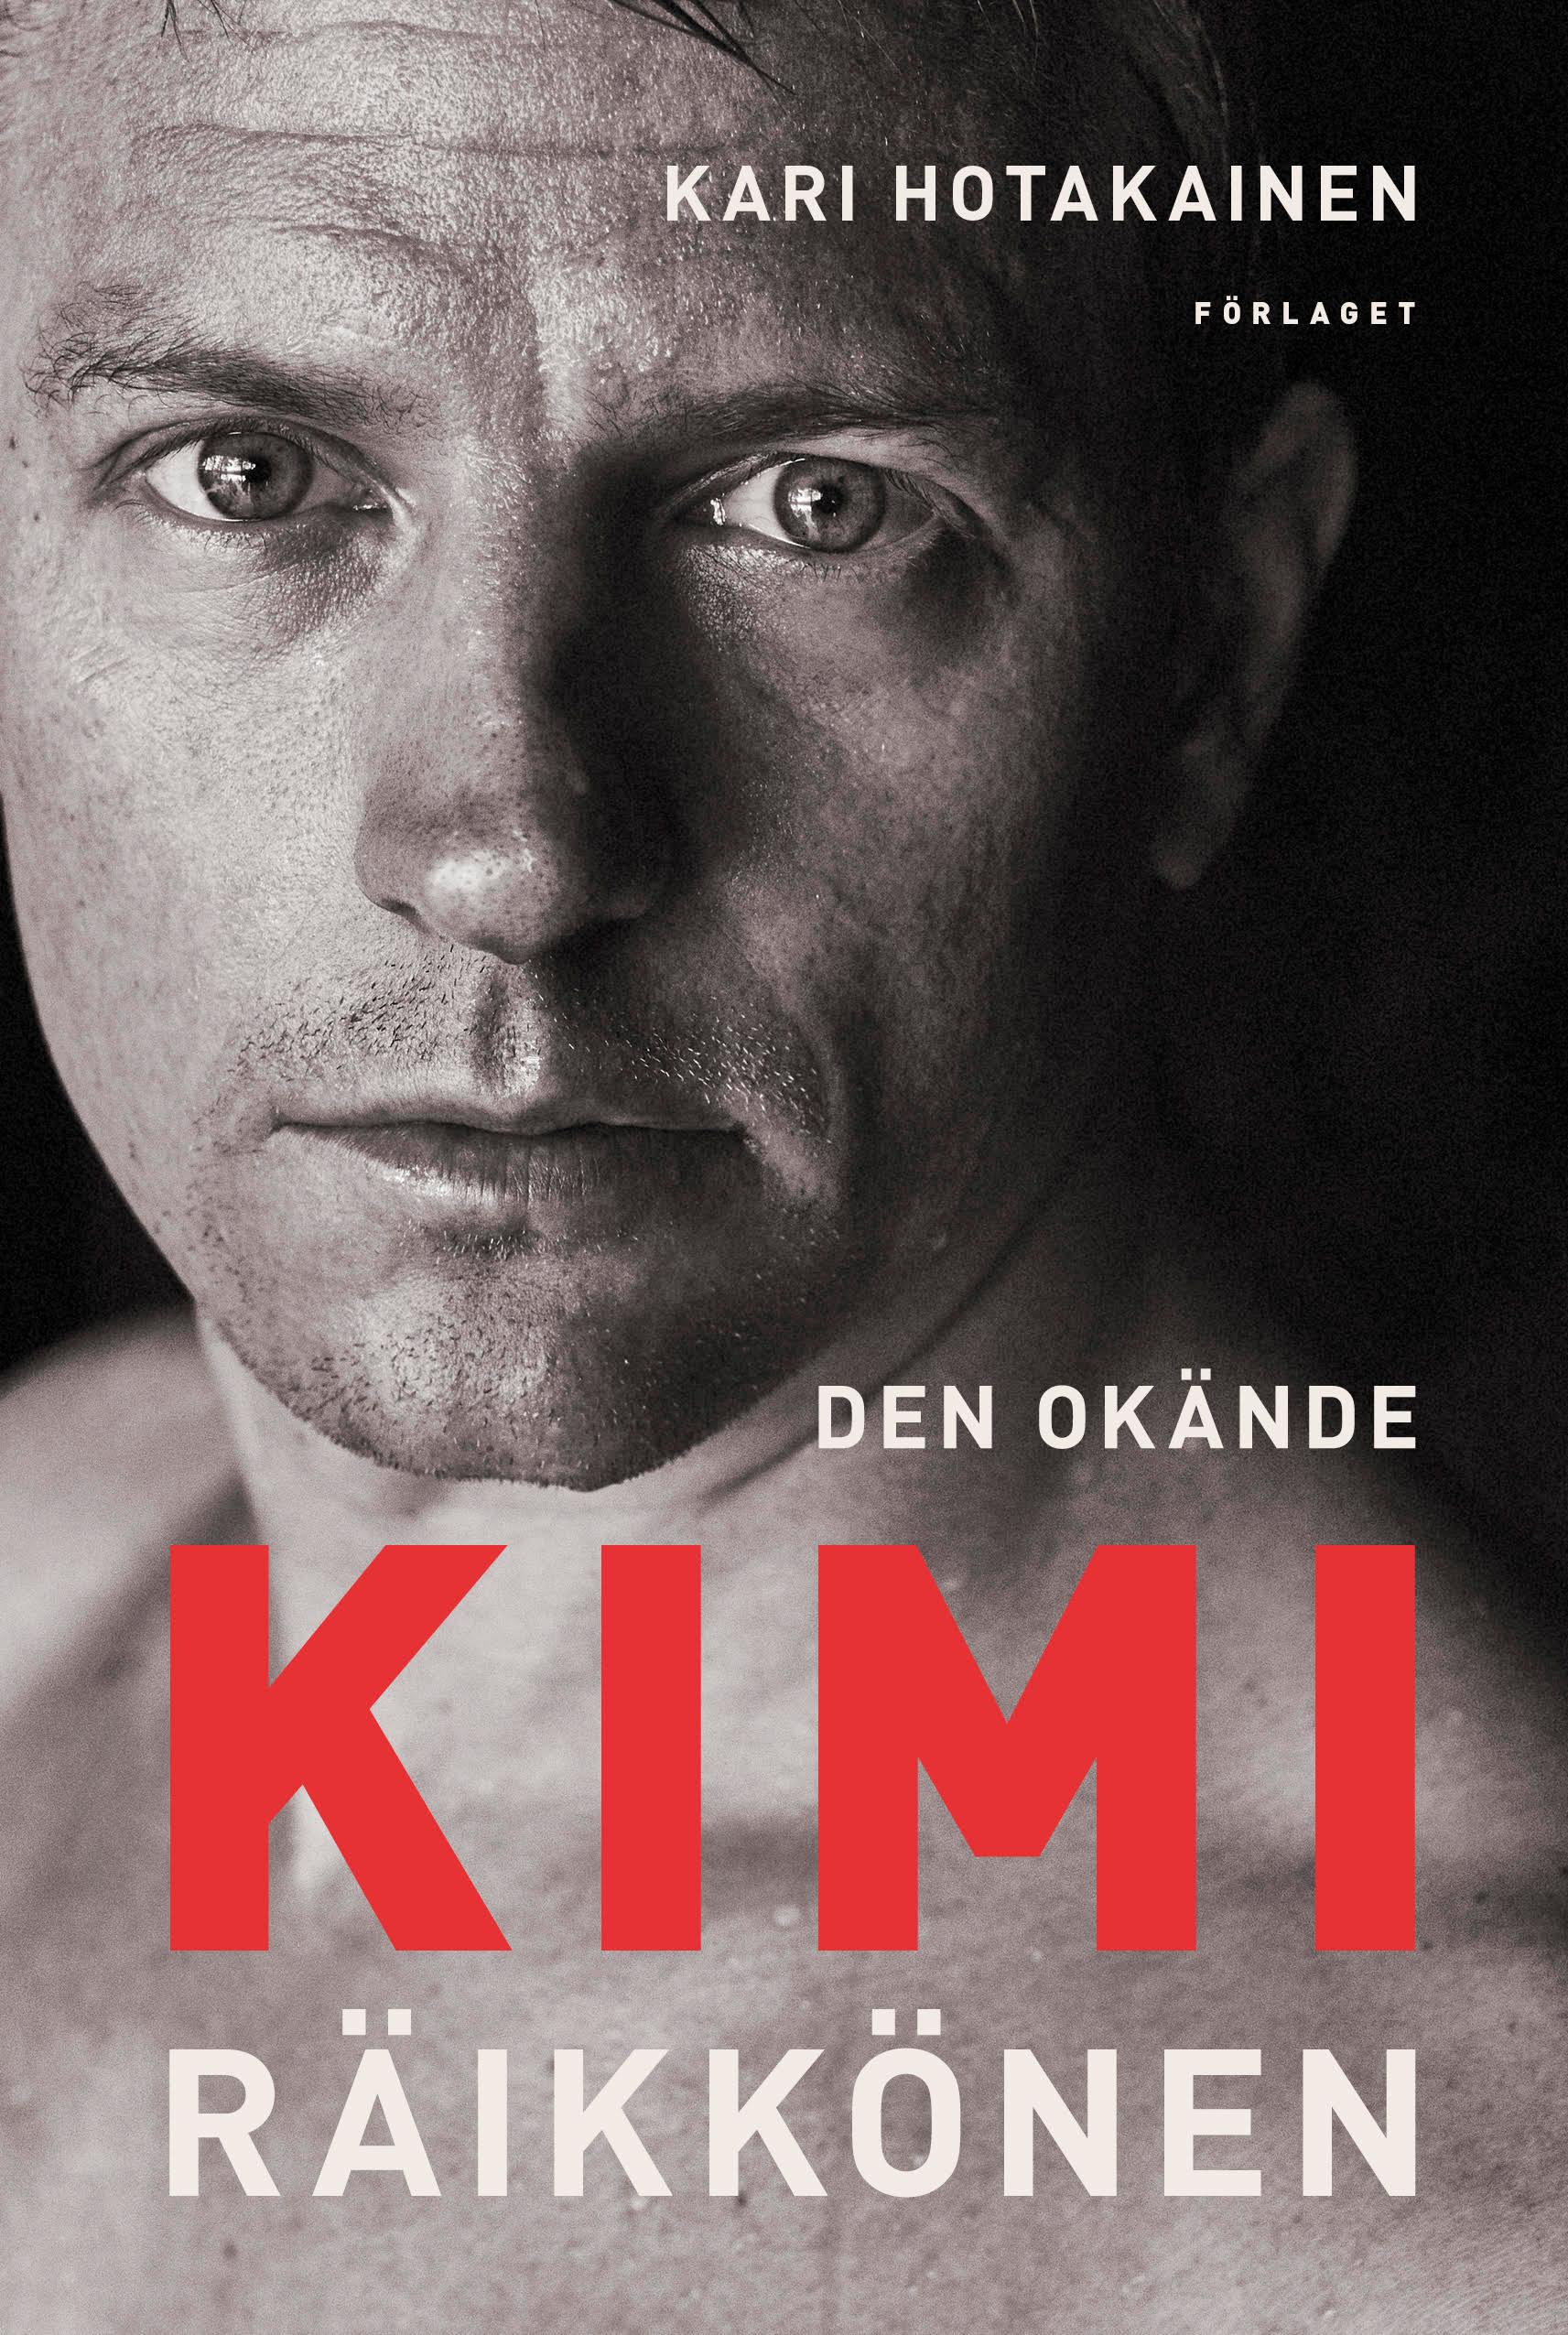 Kari Hotakainen har skrivit boken ”Den okände Kimi Räikkönen”, där vänner och familj berättar om livet på och utanför F1-banan – och om vägen från hemmet i Finland till Formel 1.